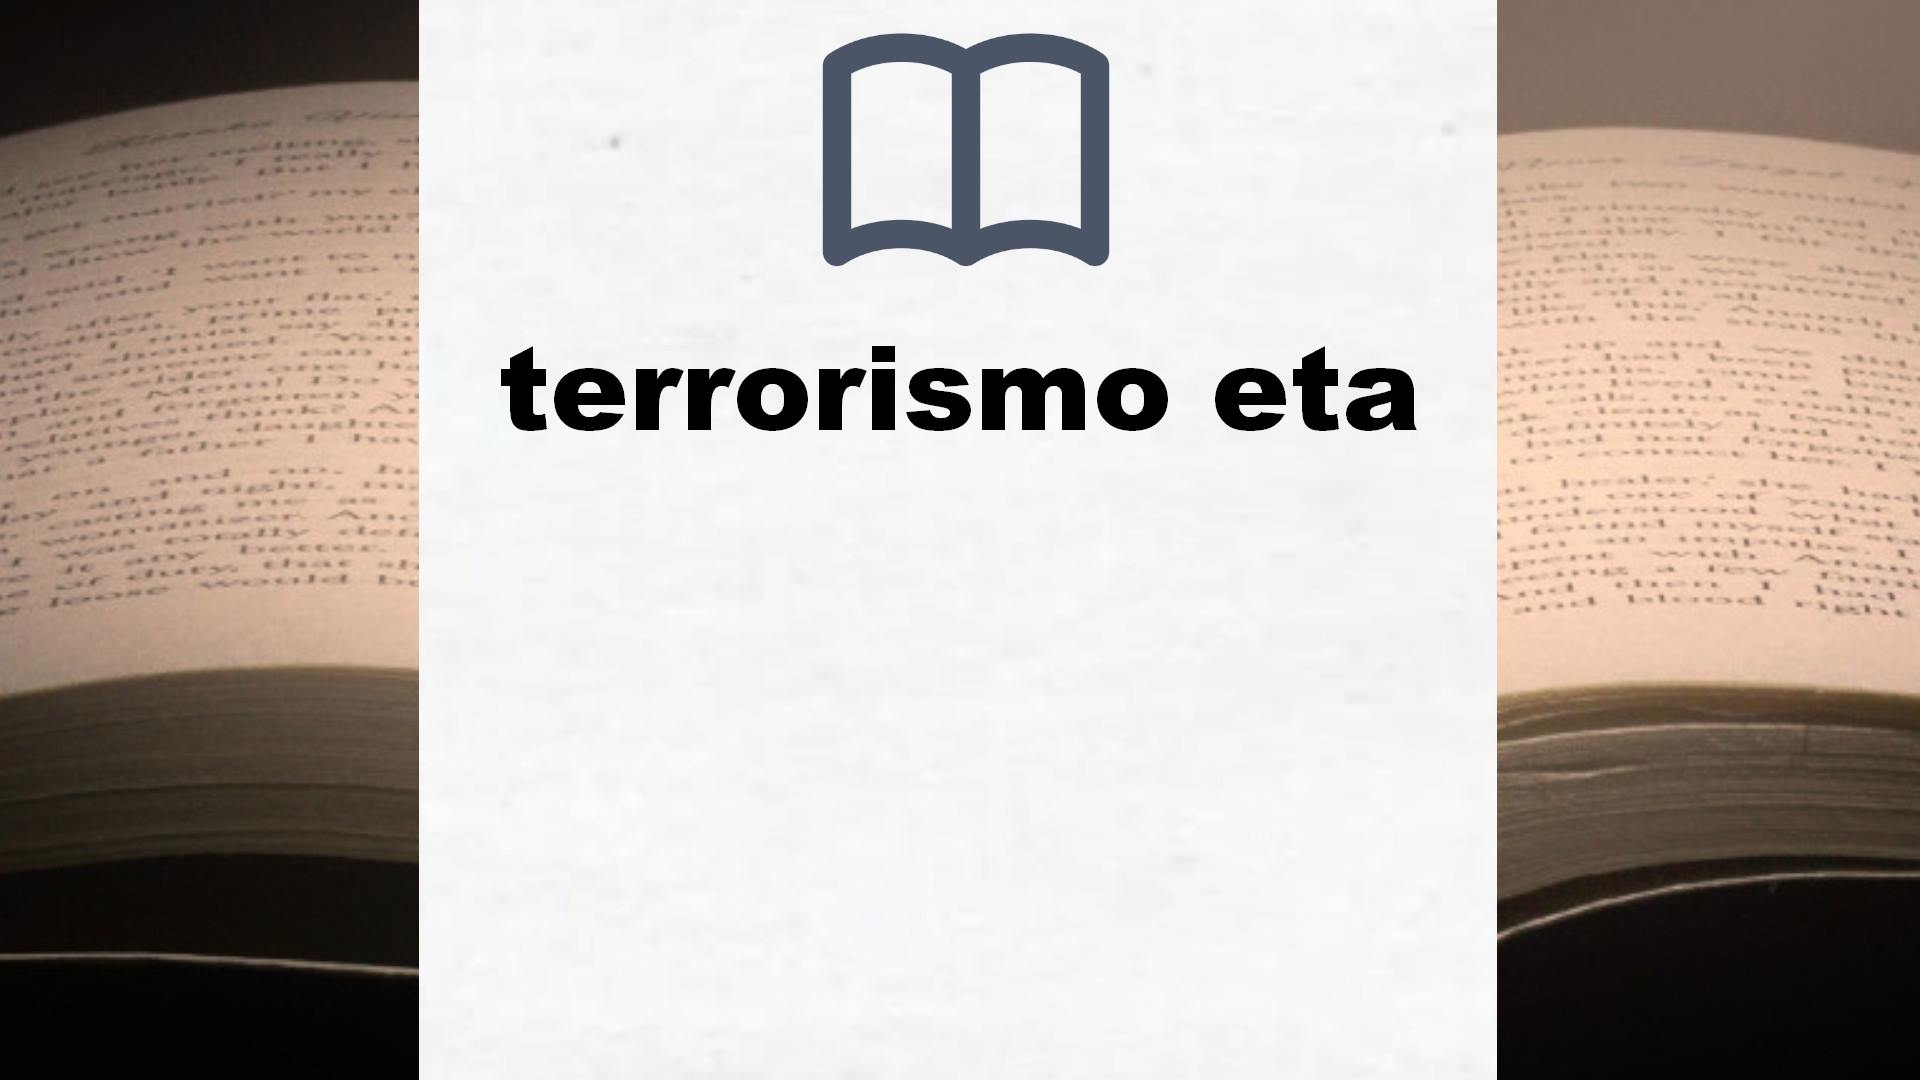 Libros sobre terrorismo eta